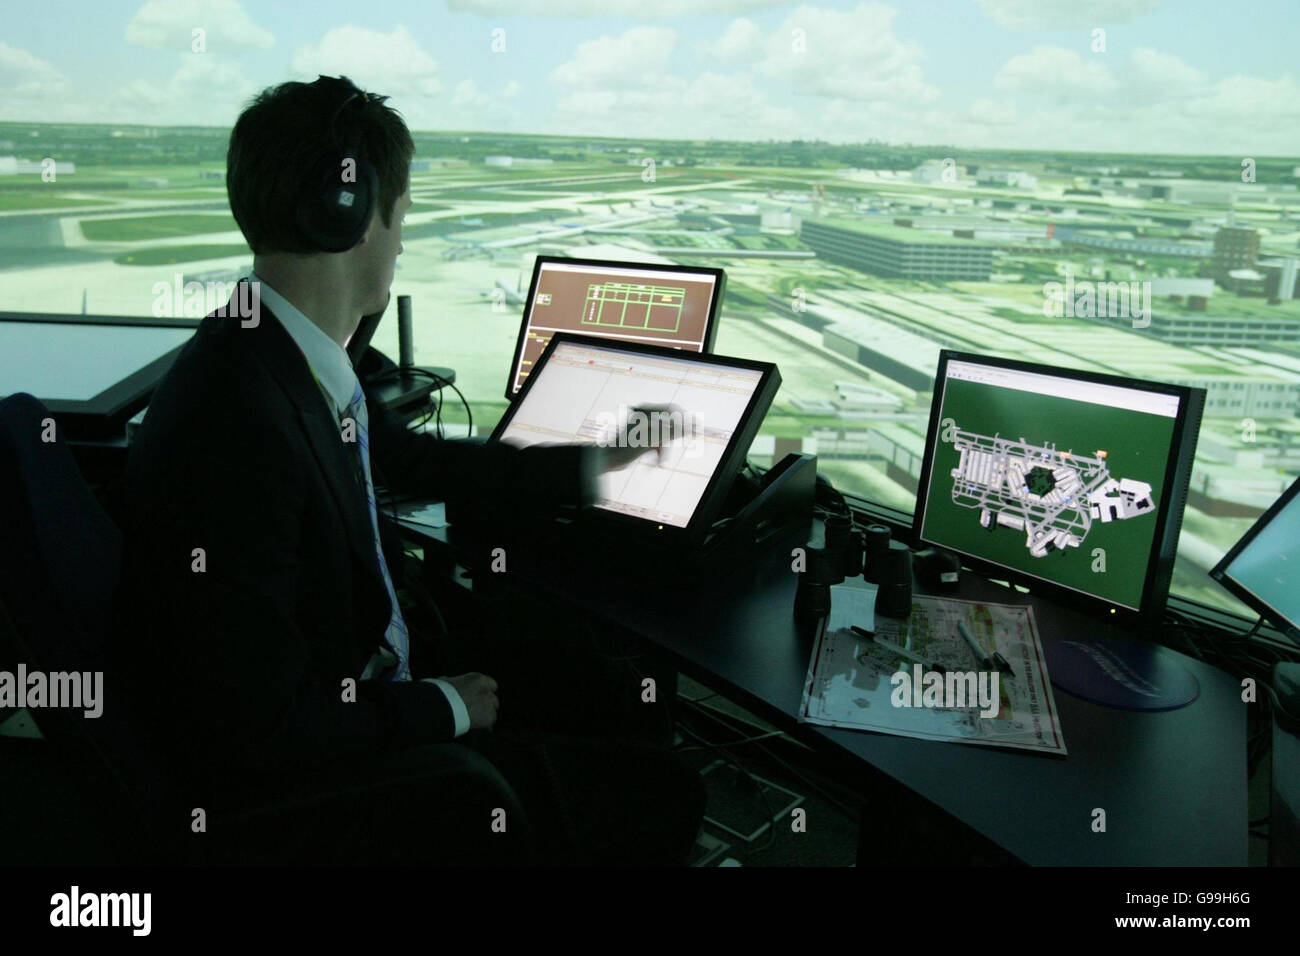 Dale Reeson, un controlador de tráfico aéreo se encuentra en el nuevo simulador de torre de control de Heathrow de 360 grados en la torre de control de tráfico aéreo del aeropuerto de Heathrow. Foto de stock